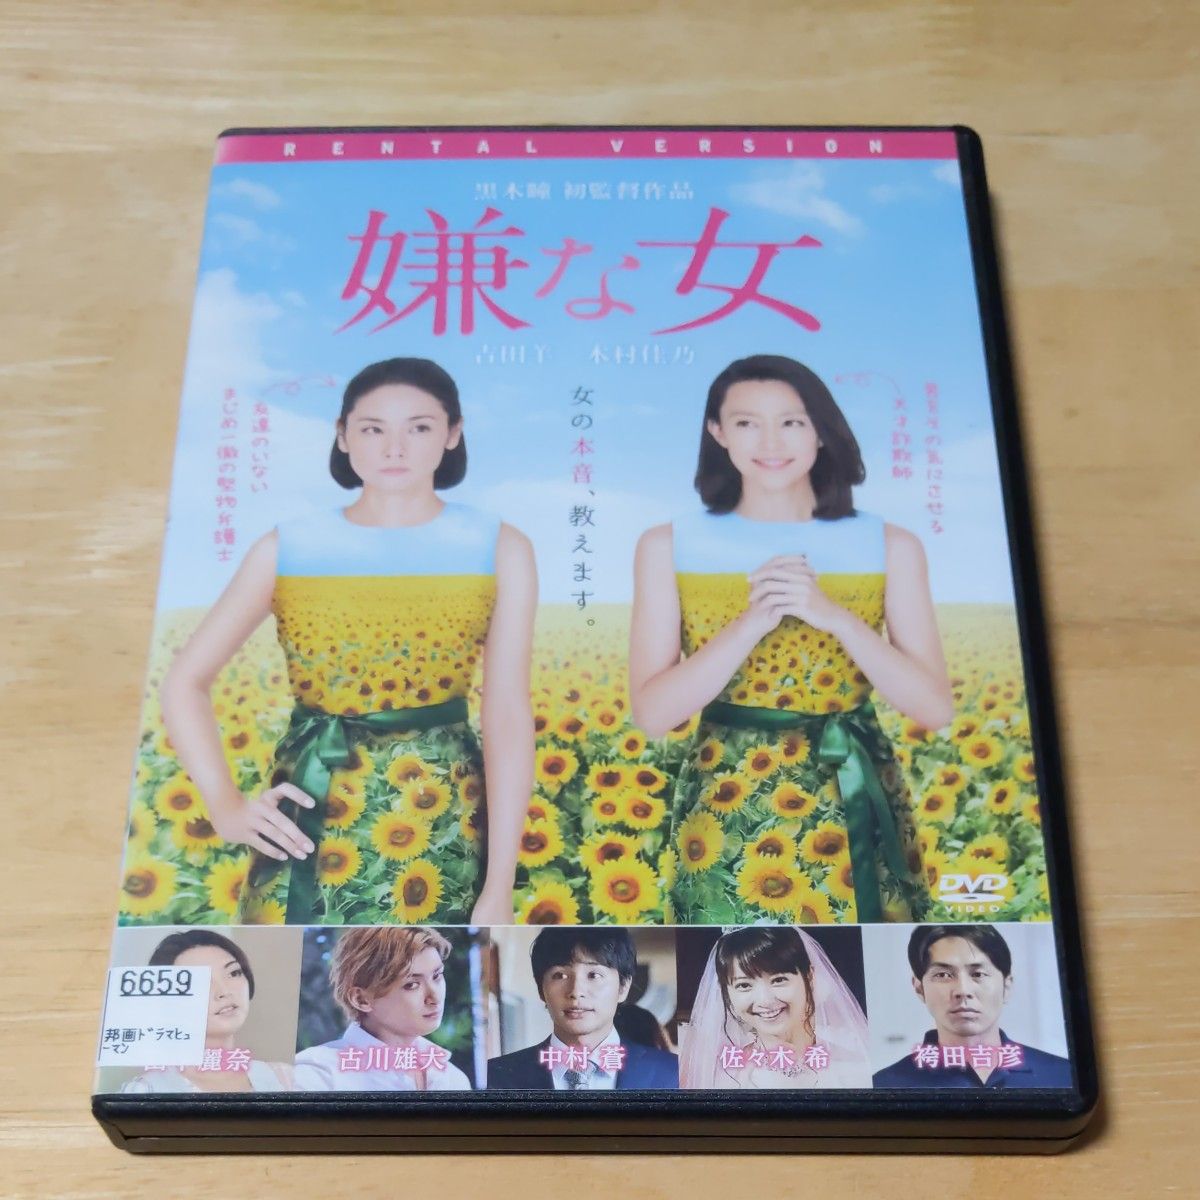 『嫌な女('16松竹/木下グループ/ポニーキャニオン)』 DVD